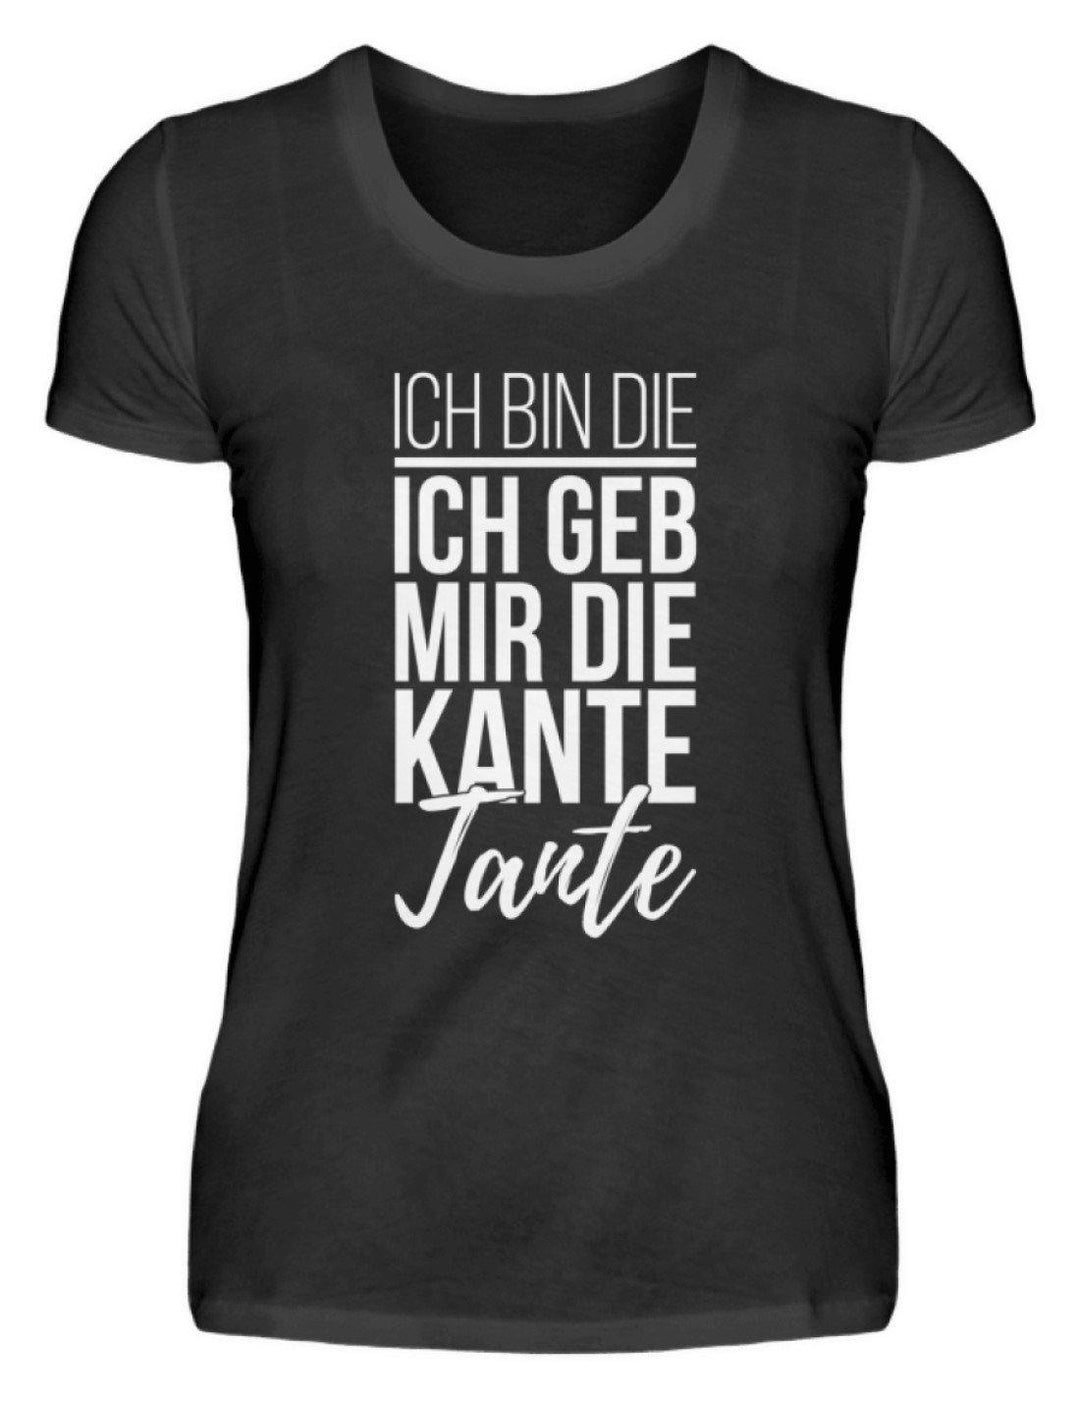 Kante Tante - Words on Shirts  - Damenshirt - Words on Shirts Sag es mit dem Mittelfinger Shirts Hoodies Sweatshirt Taschen Gymsack Spruch Sprüche Statement